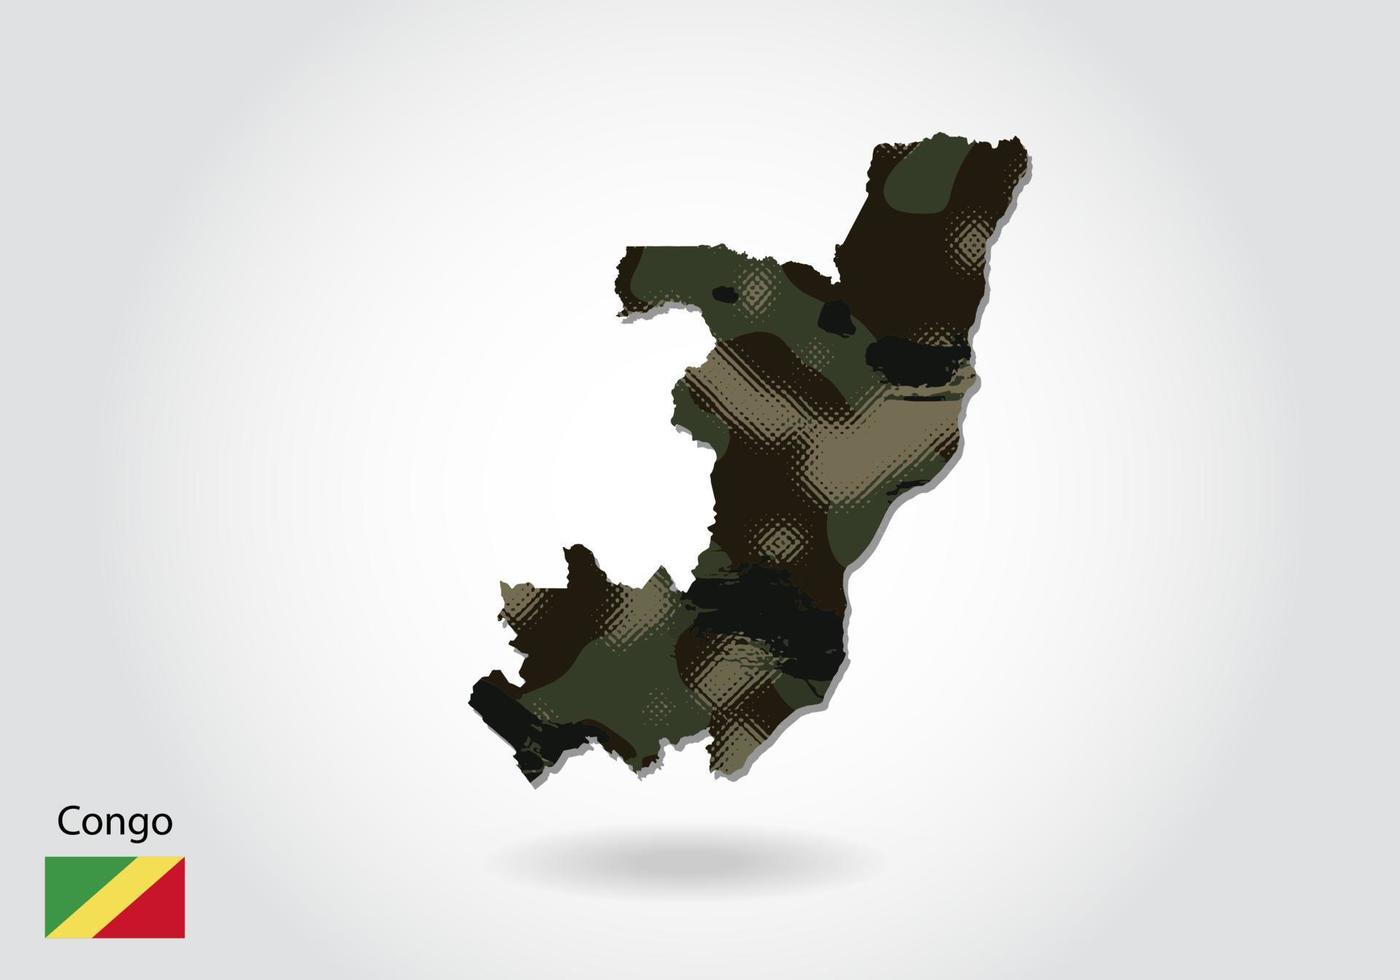 carte du congo avec motif camouflage, forêt - texture verte sur la carte. concept militaire pour l'armée, le soldat et la guerre. armoiries, drapeau. vecteur